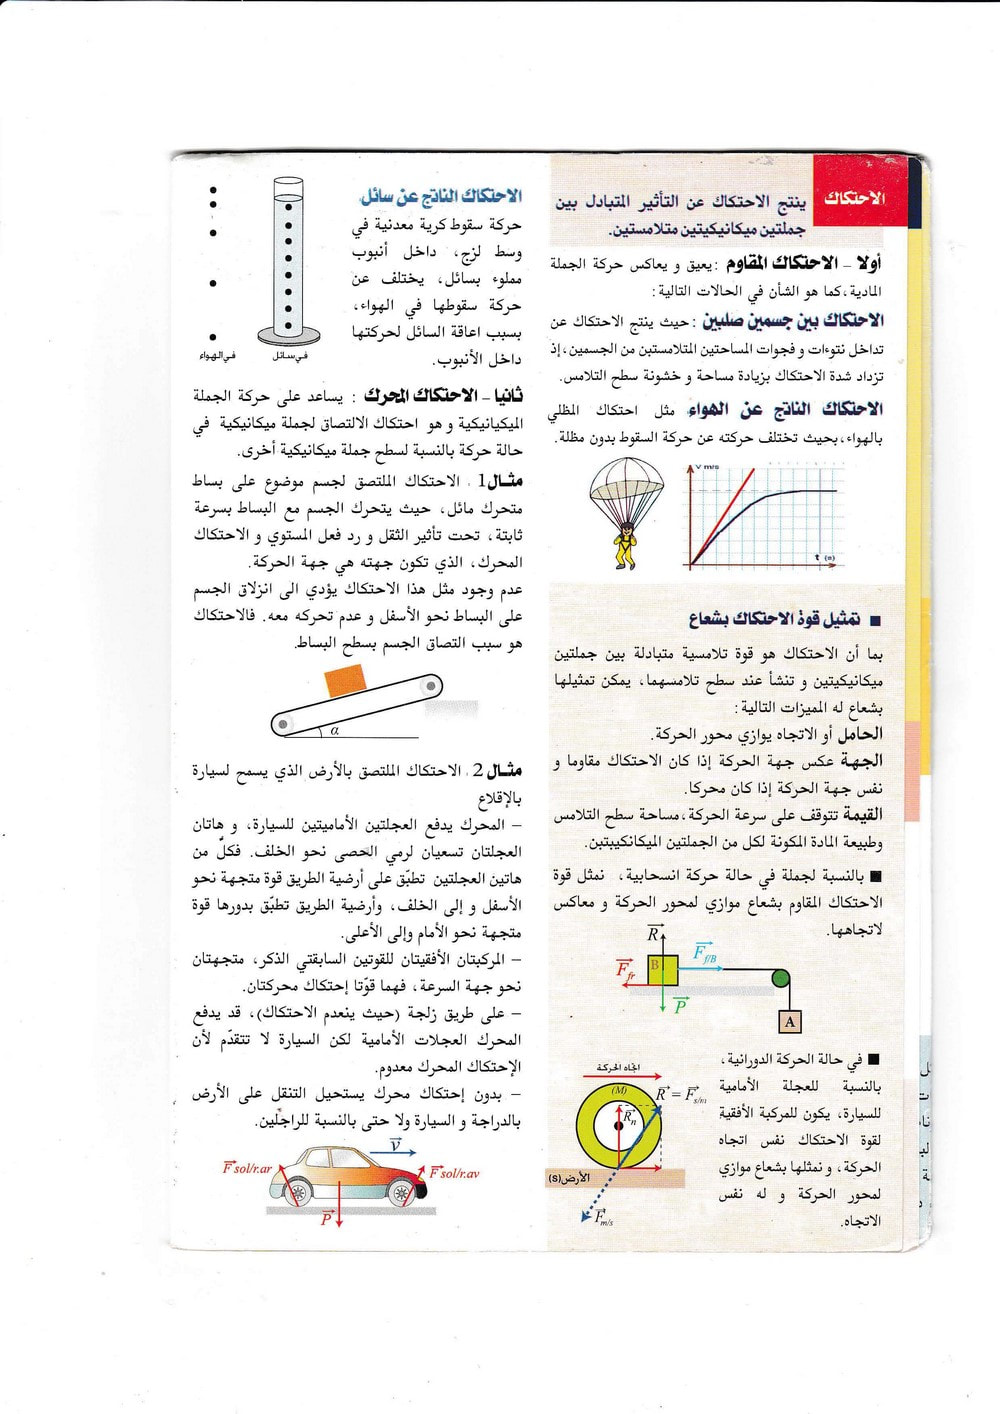 مطويات كليك في العلوم الفيزيائية سنة 4 متوسط Physics4am-clic-page-3_orig